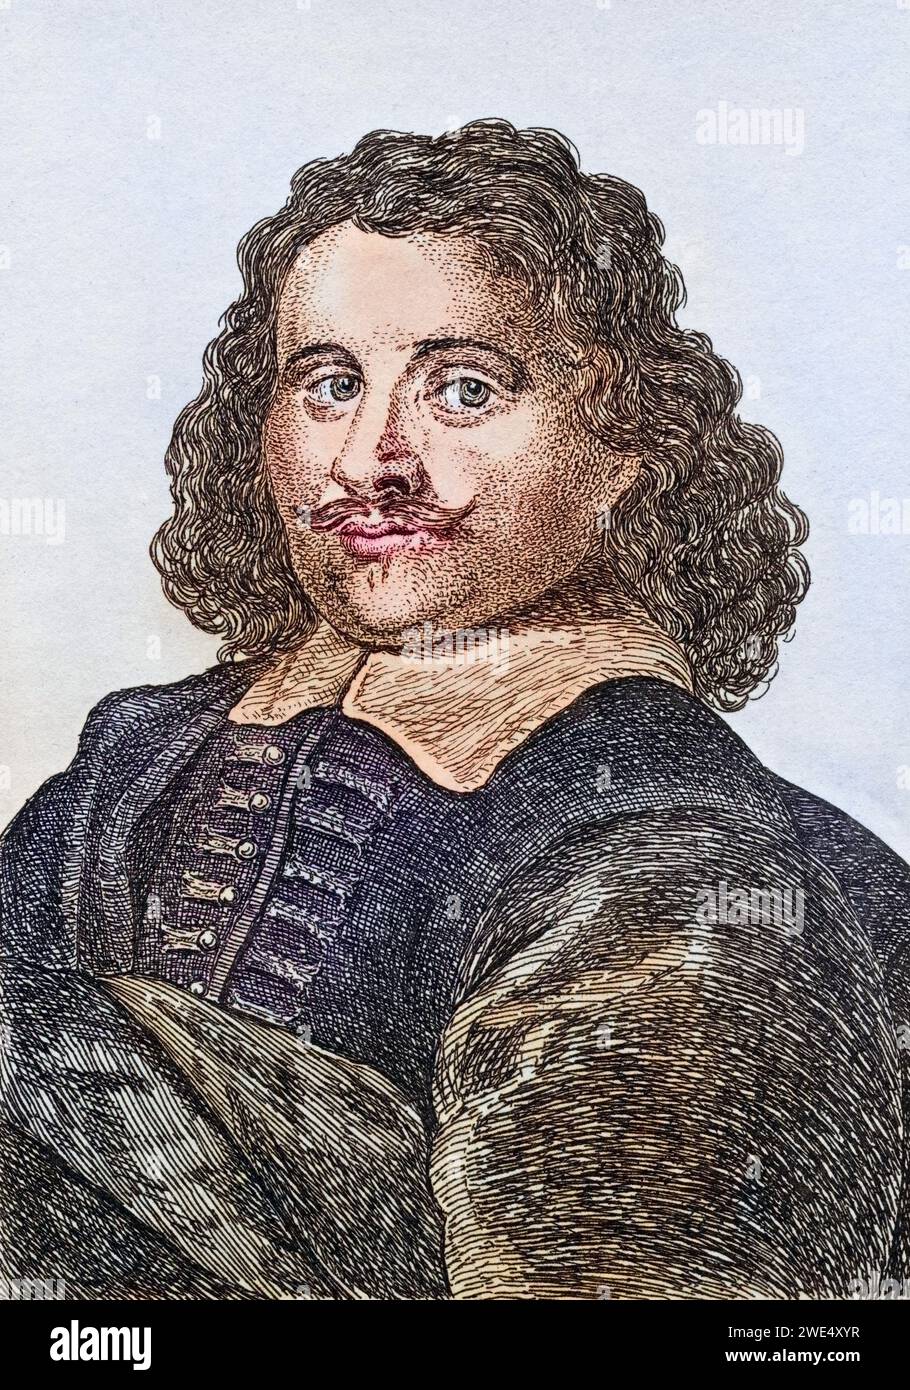 Jan Dirksz Both 1618?-1652 holländischer Künstler, Historisch, digital restaurierte Reproduktion von einer Vorlage aus dem 19. Jahrhundert, Record date not stated Stock Photo